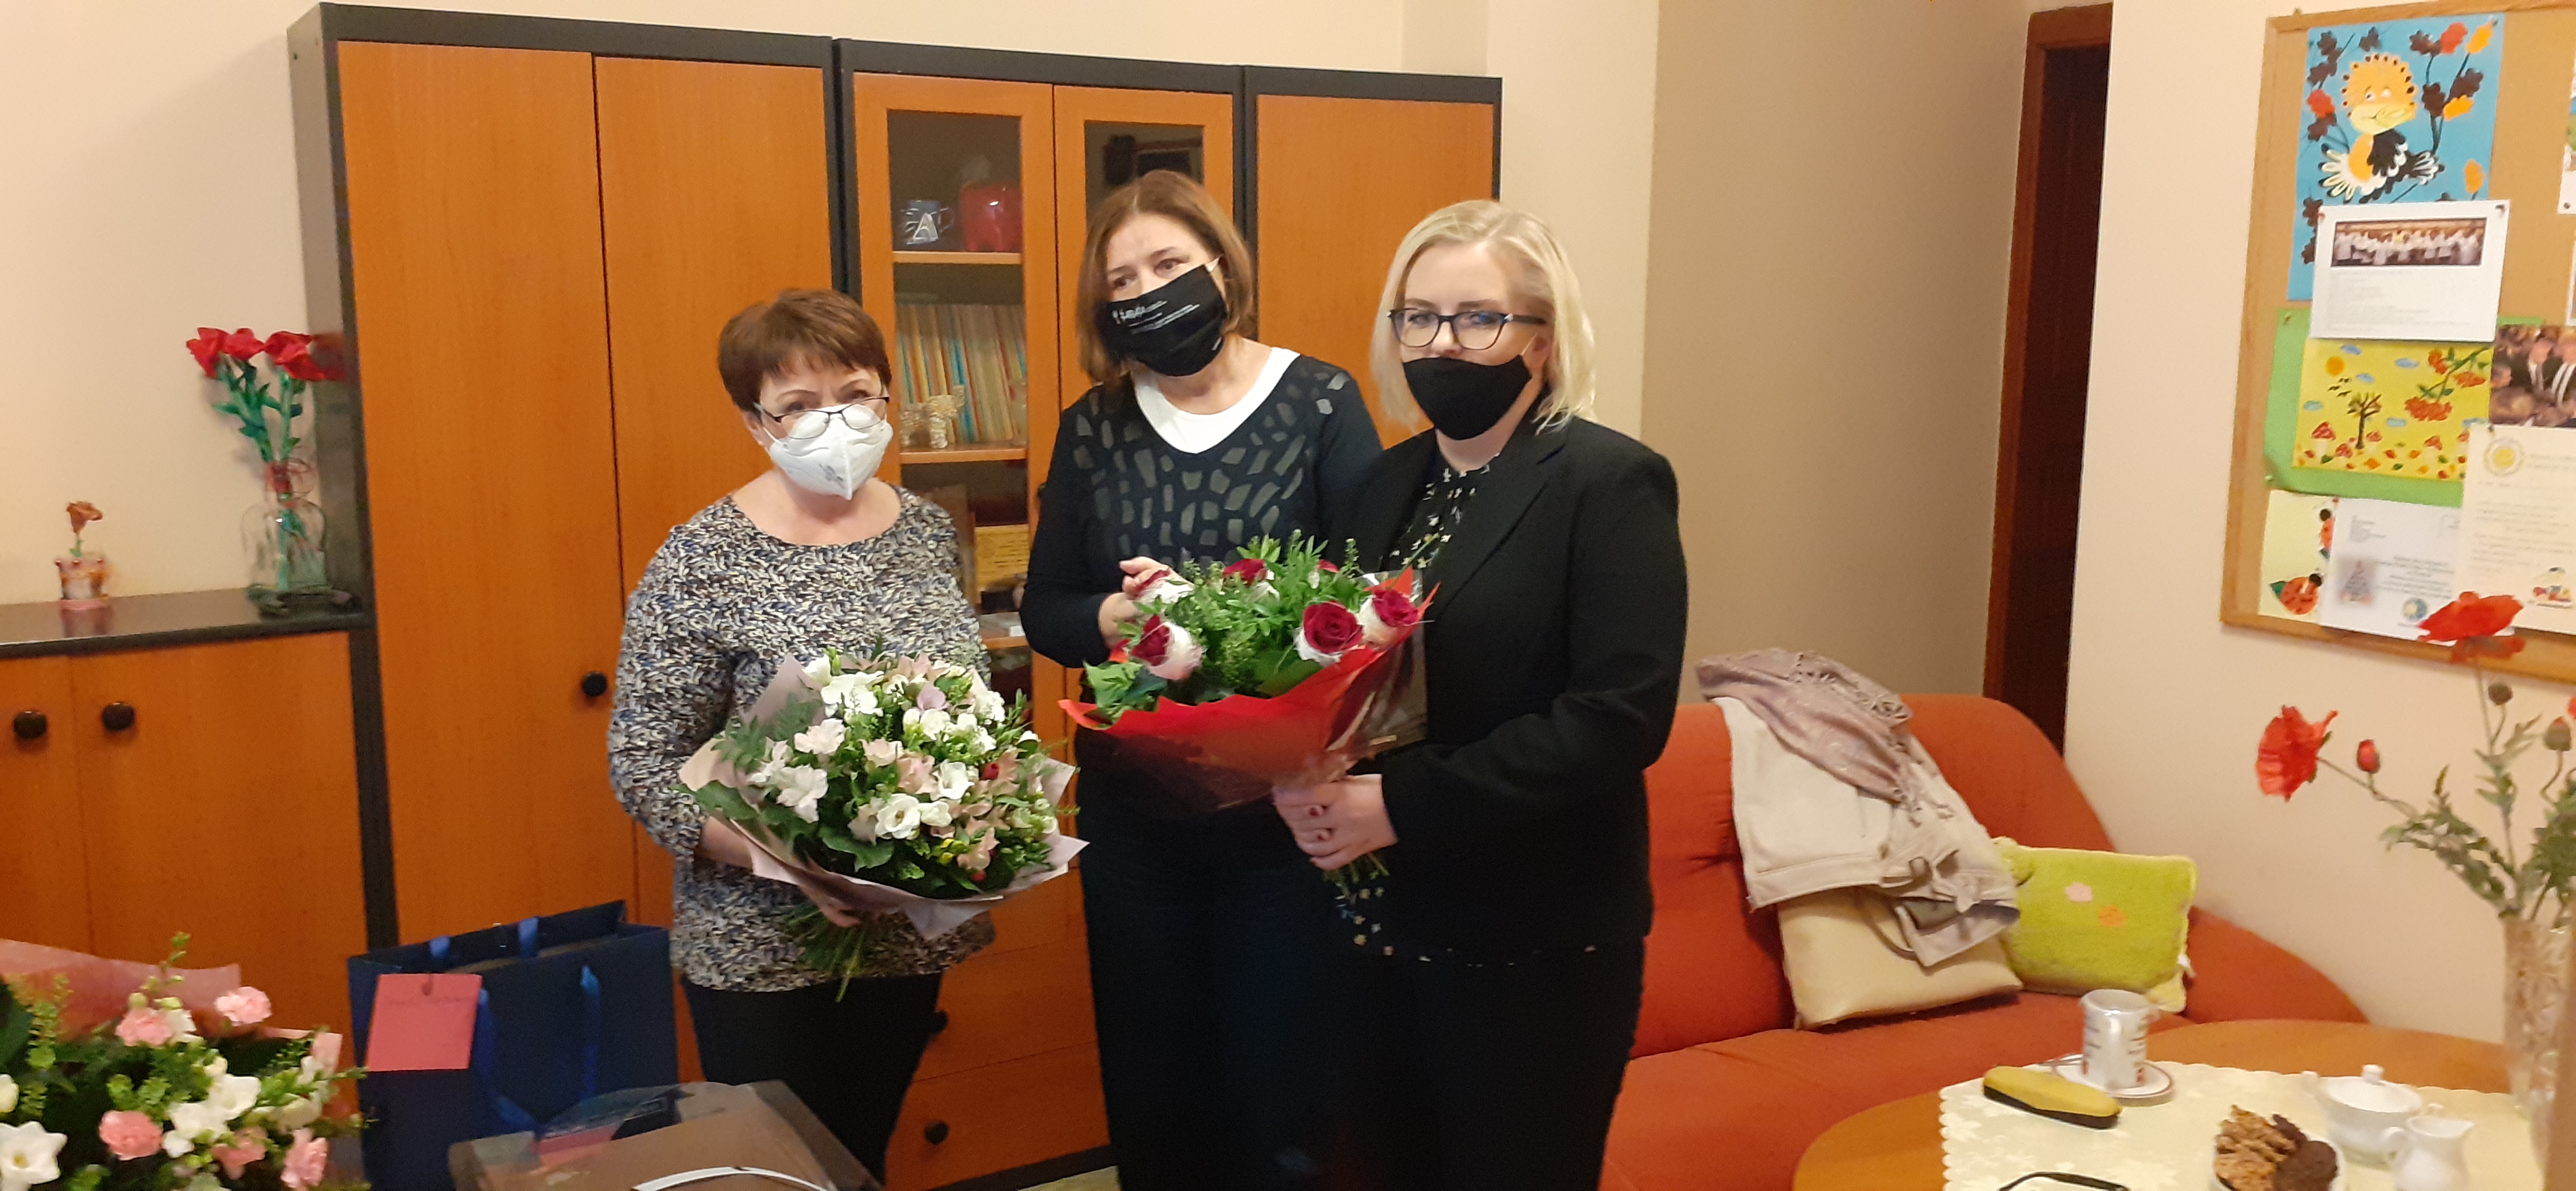 na zdjęciu widnieją trzy osoby' Reanta Talarek, Anna Józefiak - Materna Dyrektor MOPS oraz Jolanta Dutkiewicz